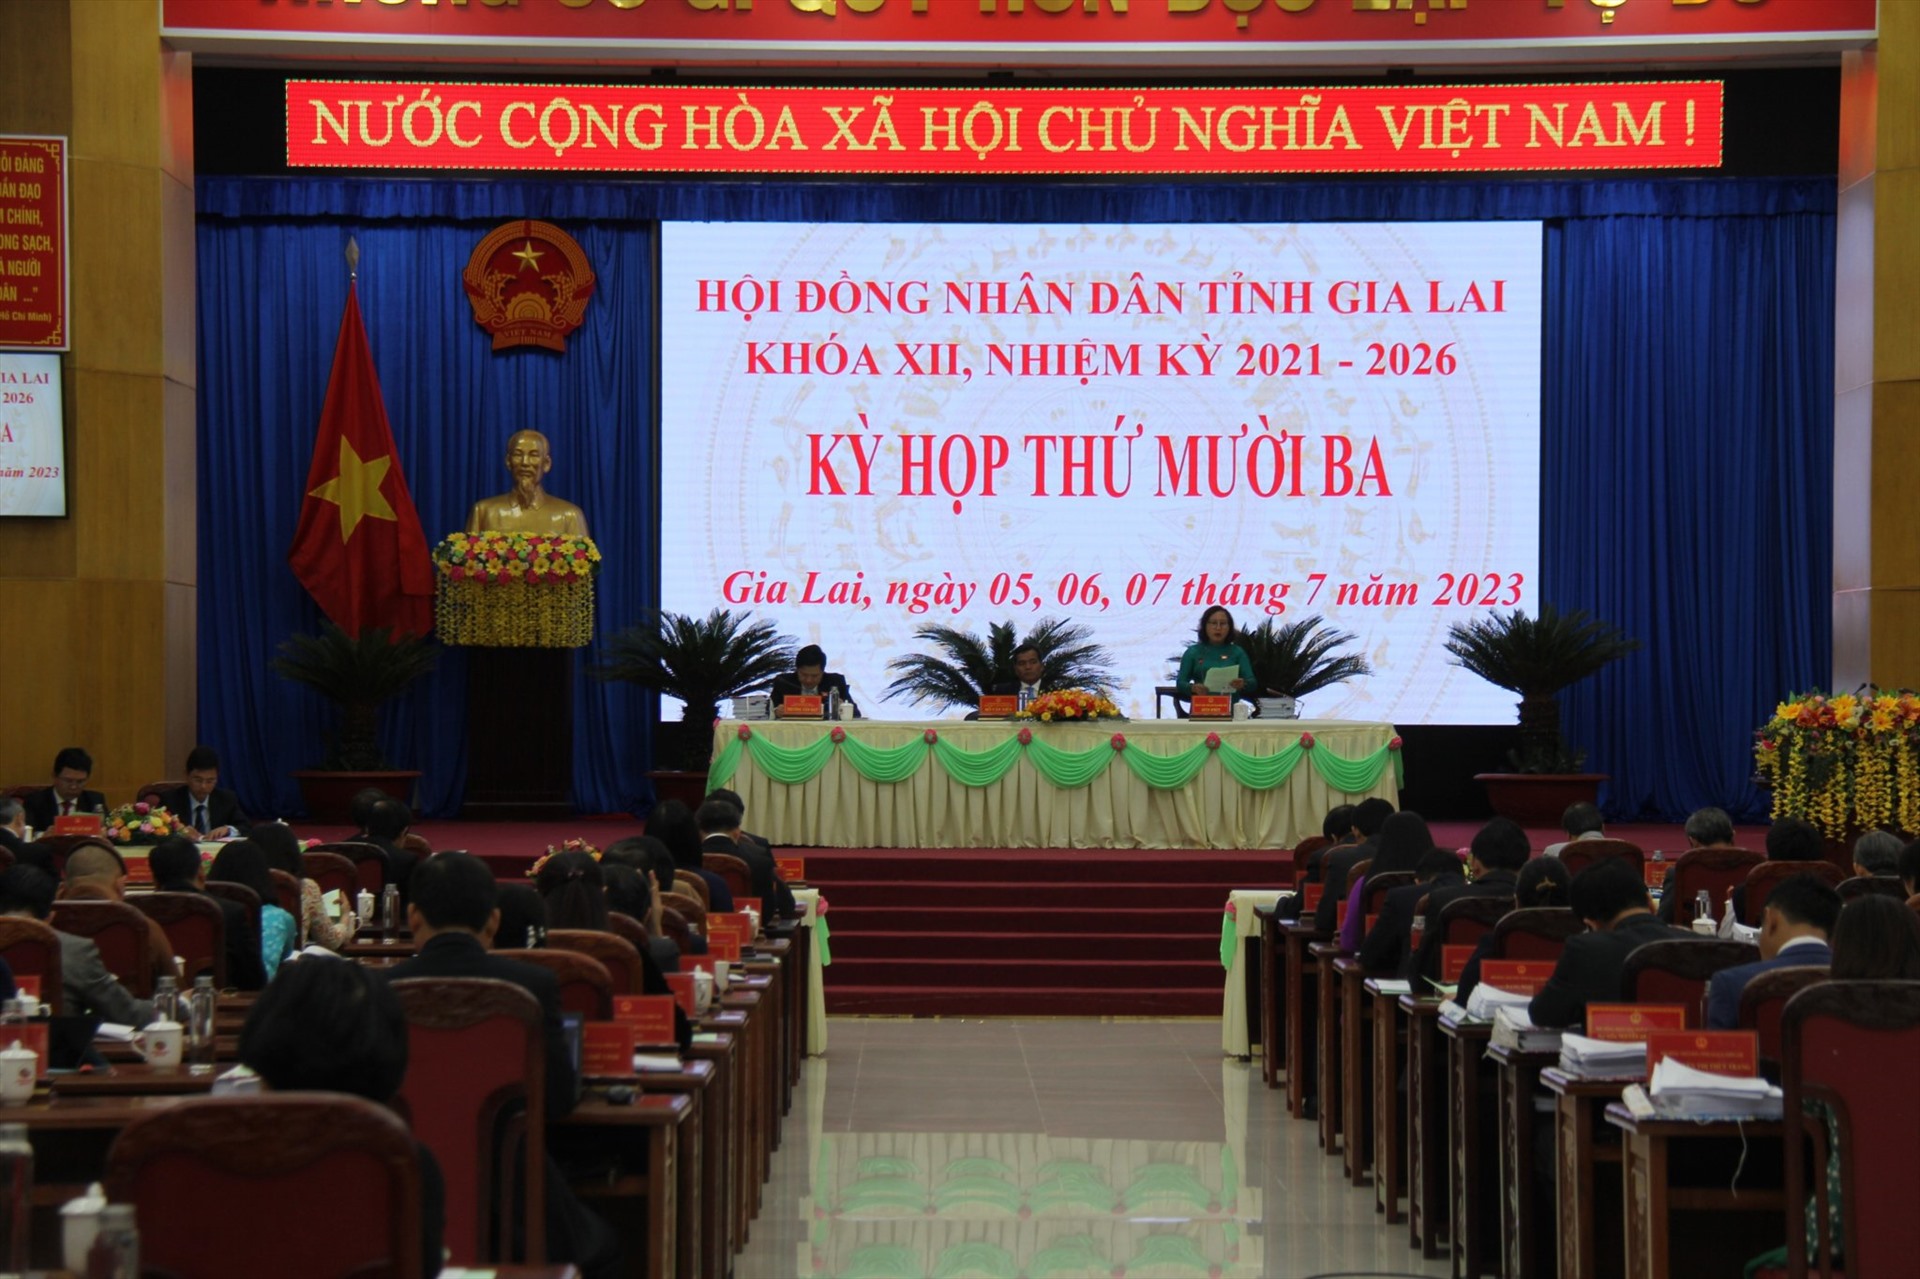 Quang cảnh kỳ họp thứ 13, khoá XII Hội đồng nhân dân tỉnh Gia Lai. Ảnh Thanh Tuấn 